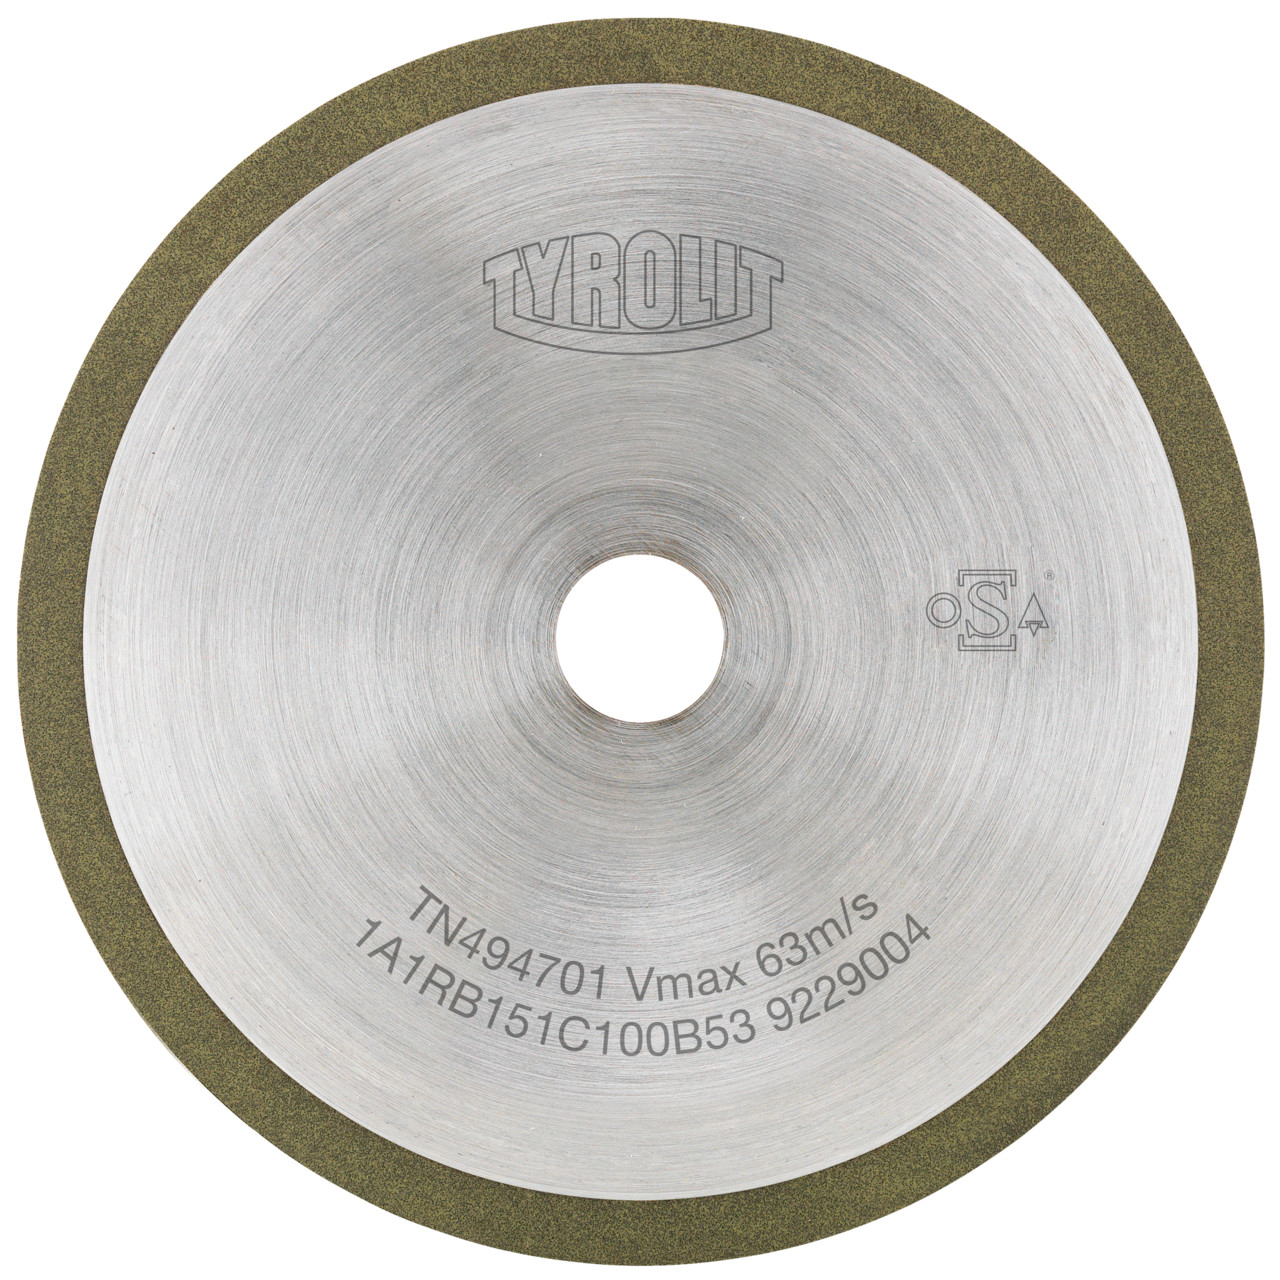 TYROLIT Utensili rotativi da taglio DxDxH 200x1,2x30 Per metallo duro, forma: 1A1R (disco da taglio con rotella continua), Art. 603284